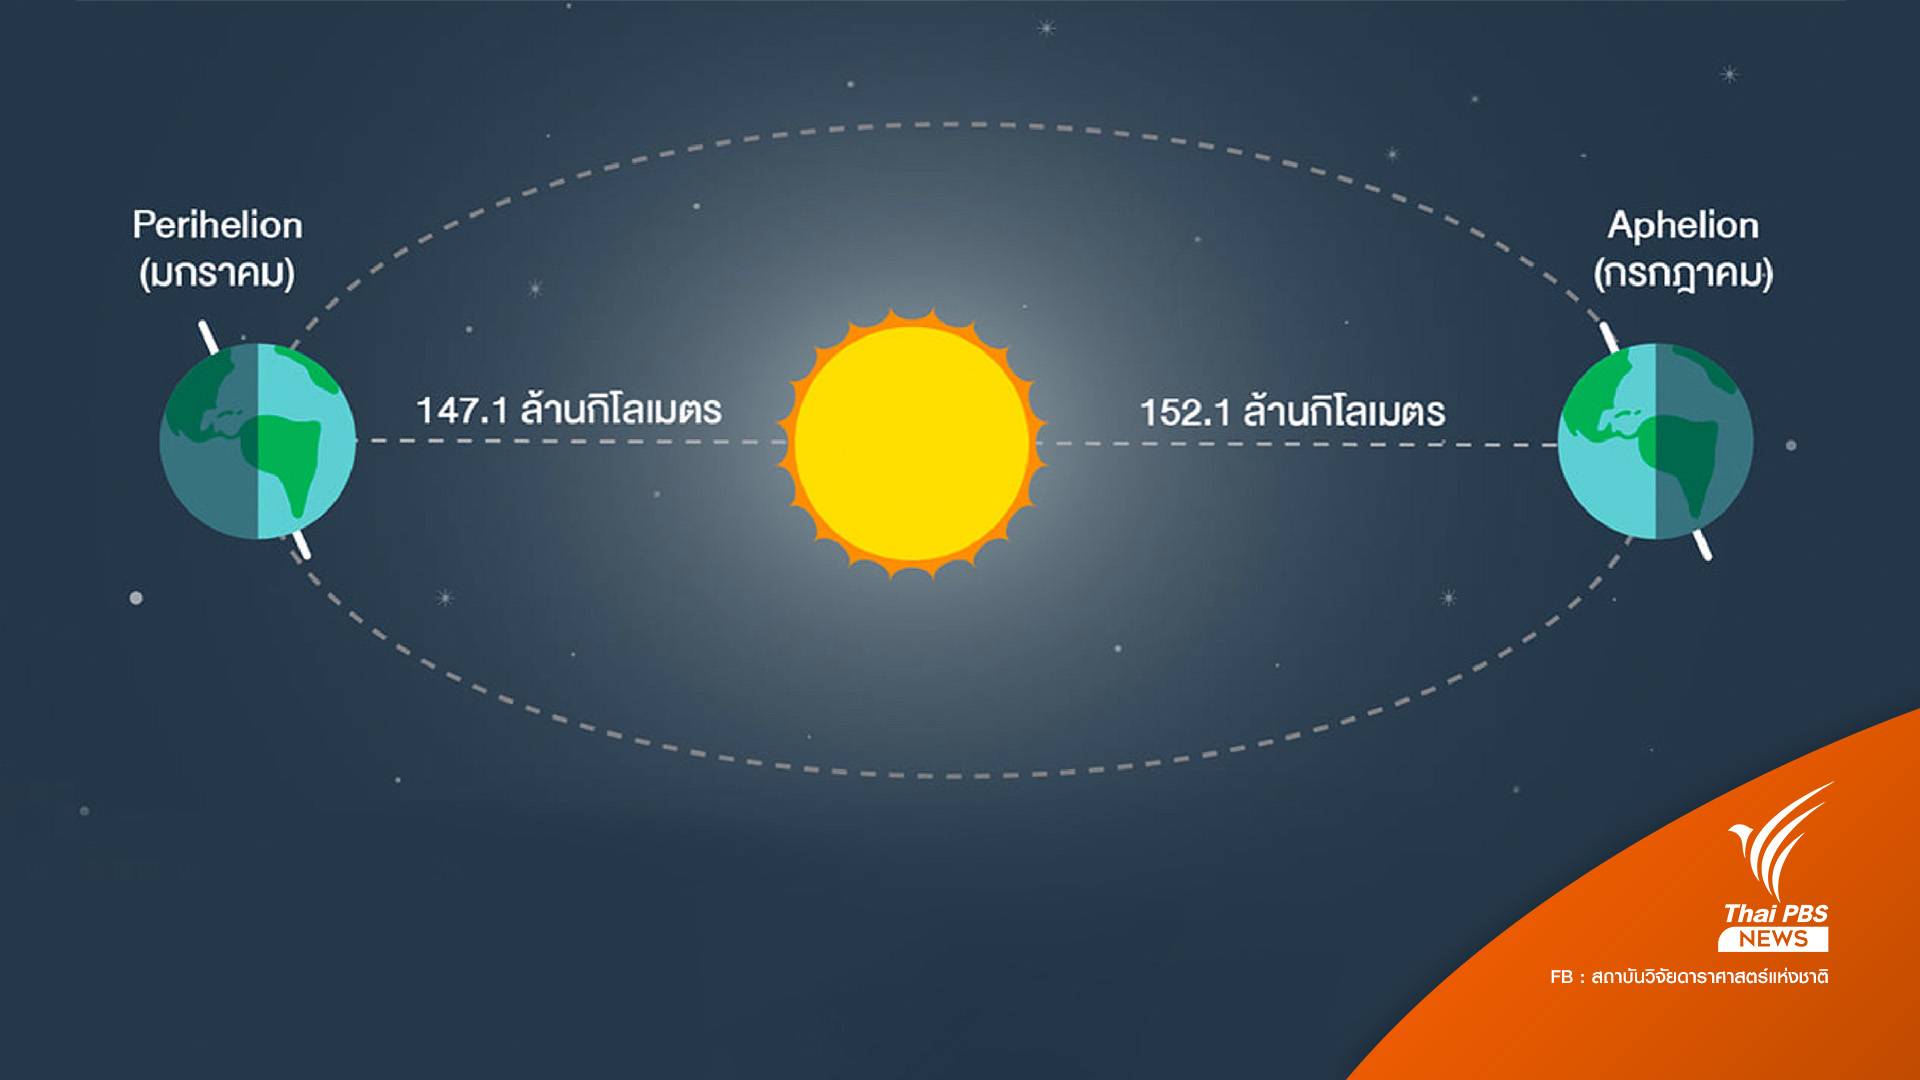 4 ก.ค. "โลก" โคจรอยู่ห่าง "ดวงอาทิตย์" ที่สุดในรอบปี